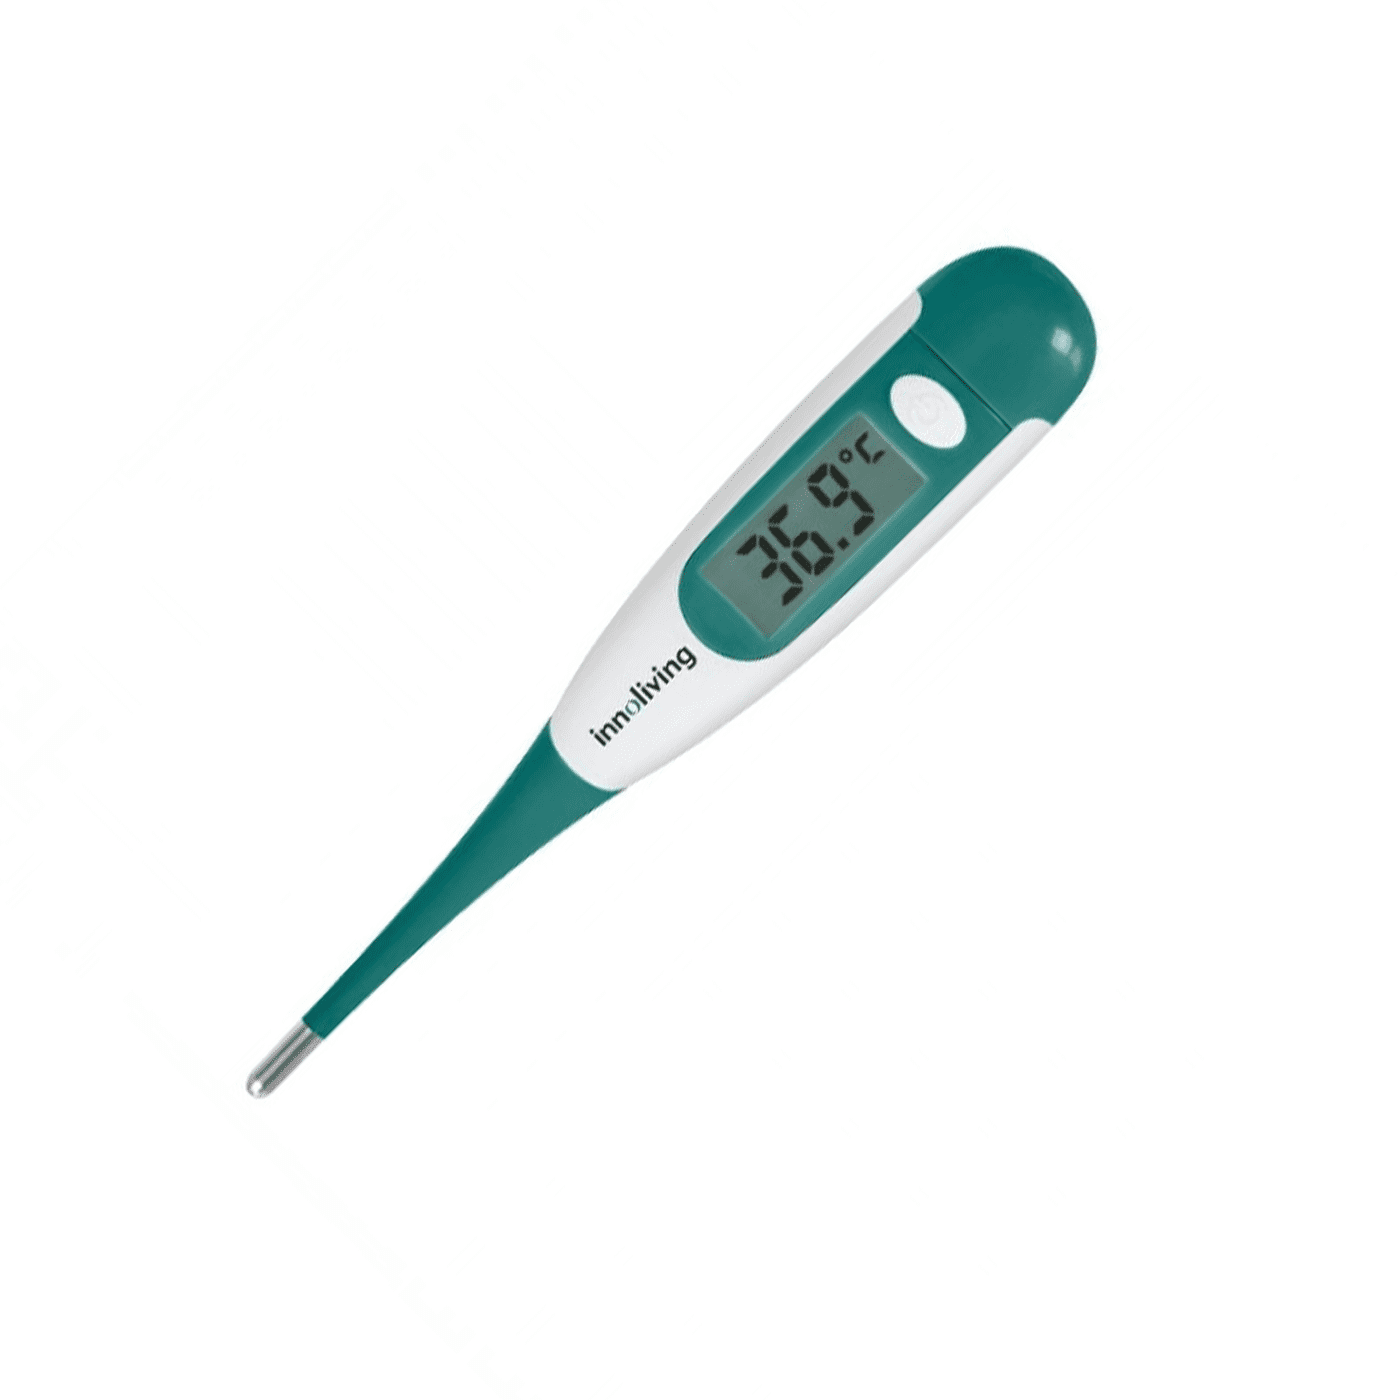 Termometro digitale con sonda flessibile, Innoliving INN-018 – Inshopping